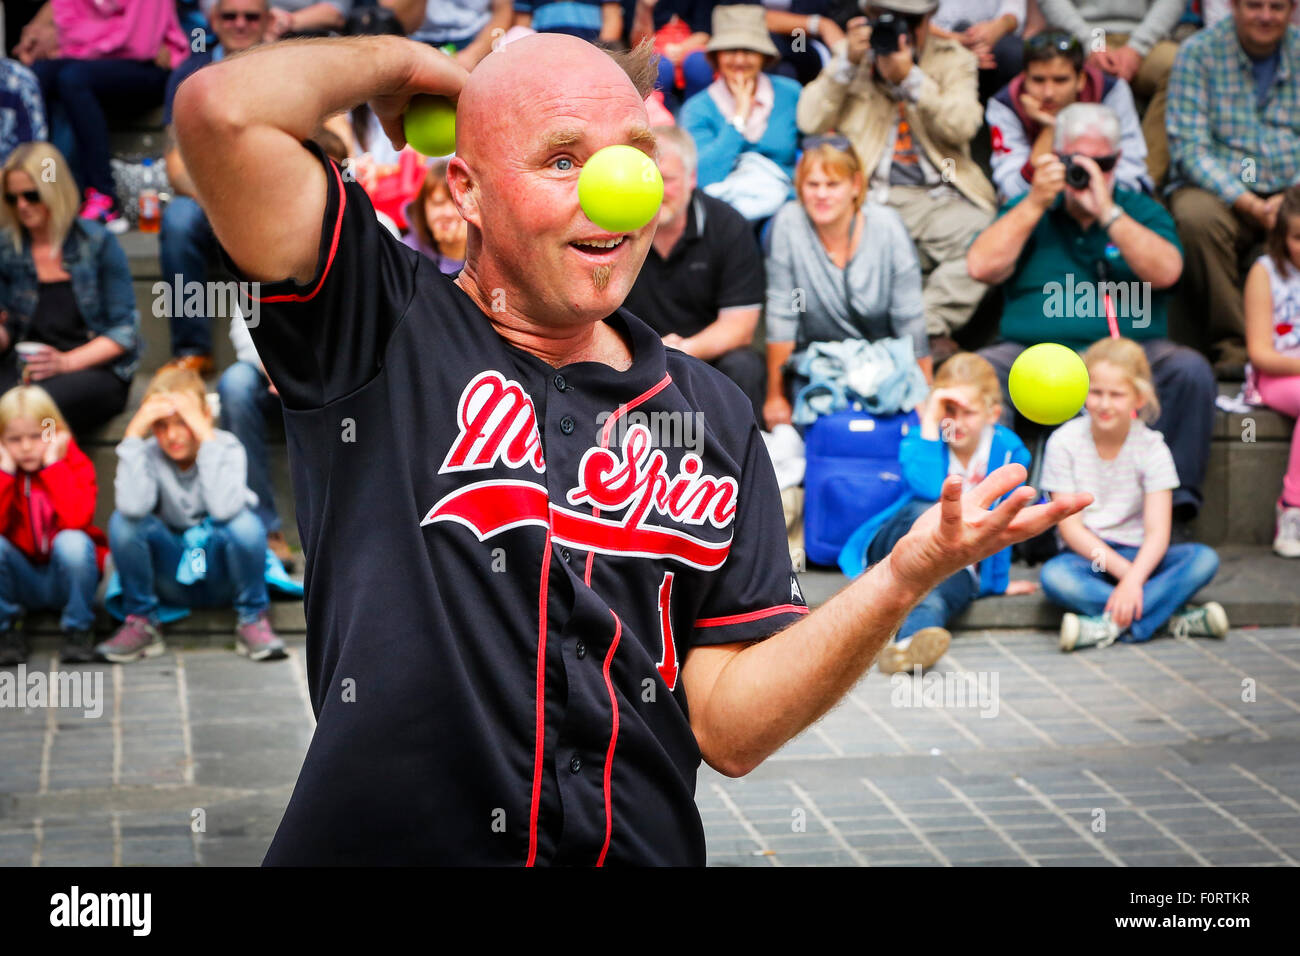 M. Spin, un jongleur, effectuant à l'Edinburgh Fringe Festival, Ecosse, Royaume-Uni Banque D'Images